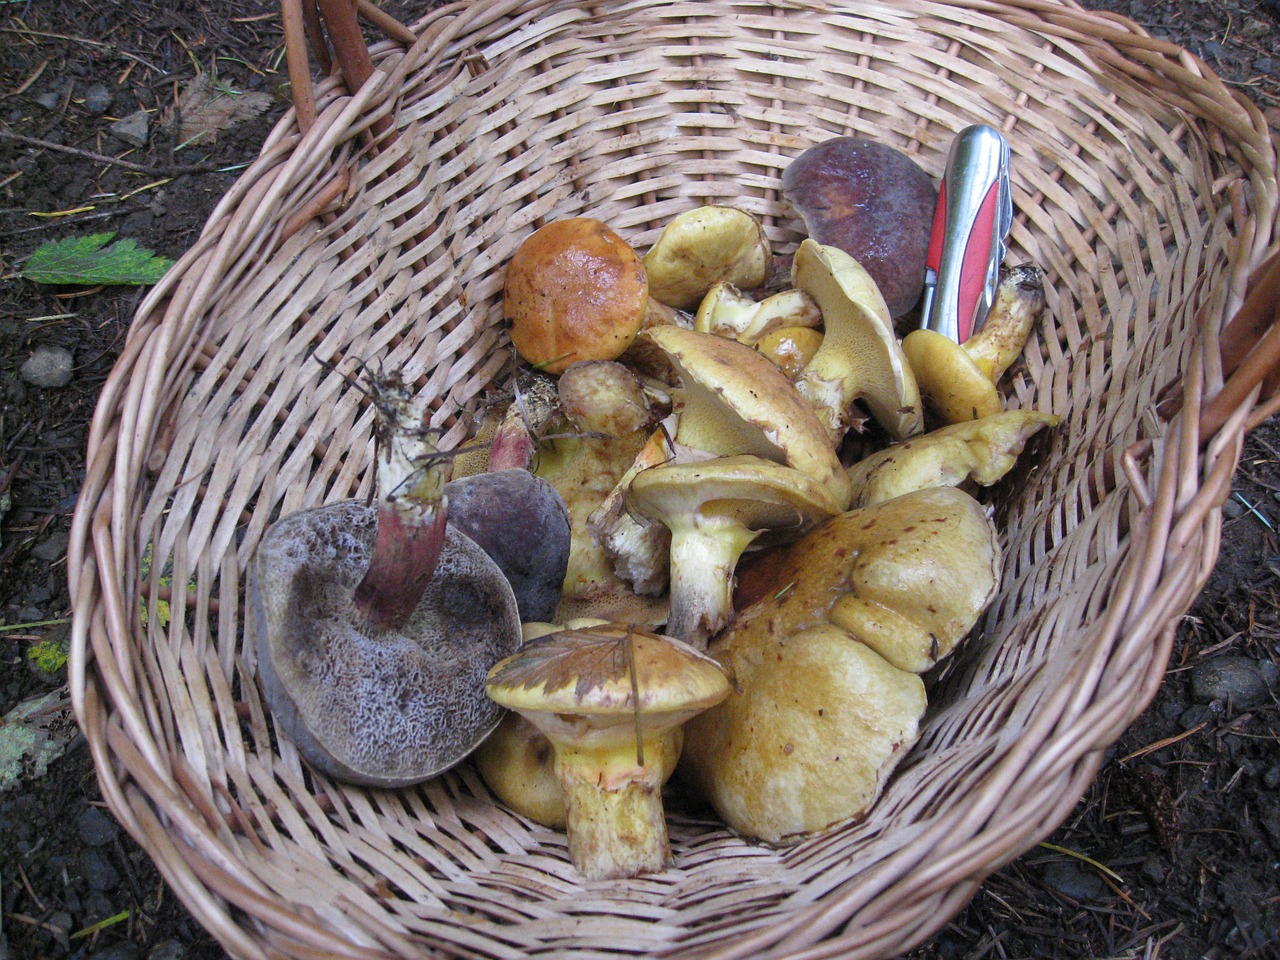 mushroom harvest basket free photo